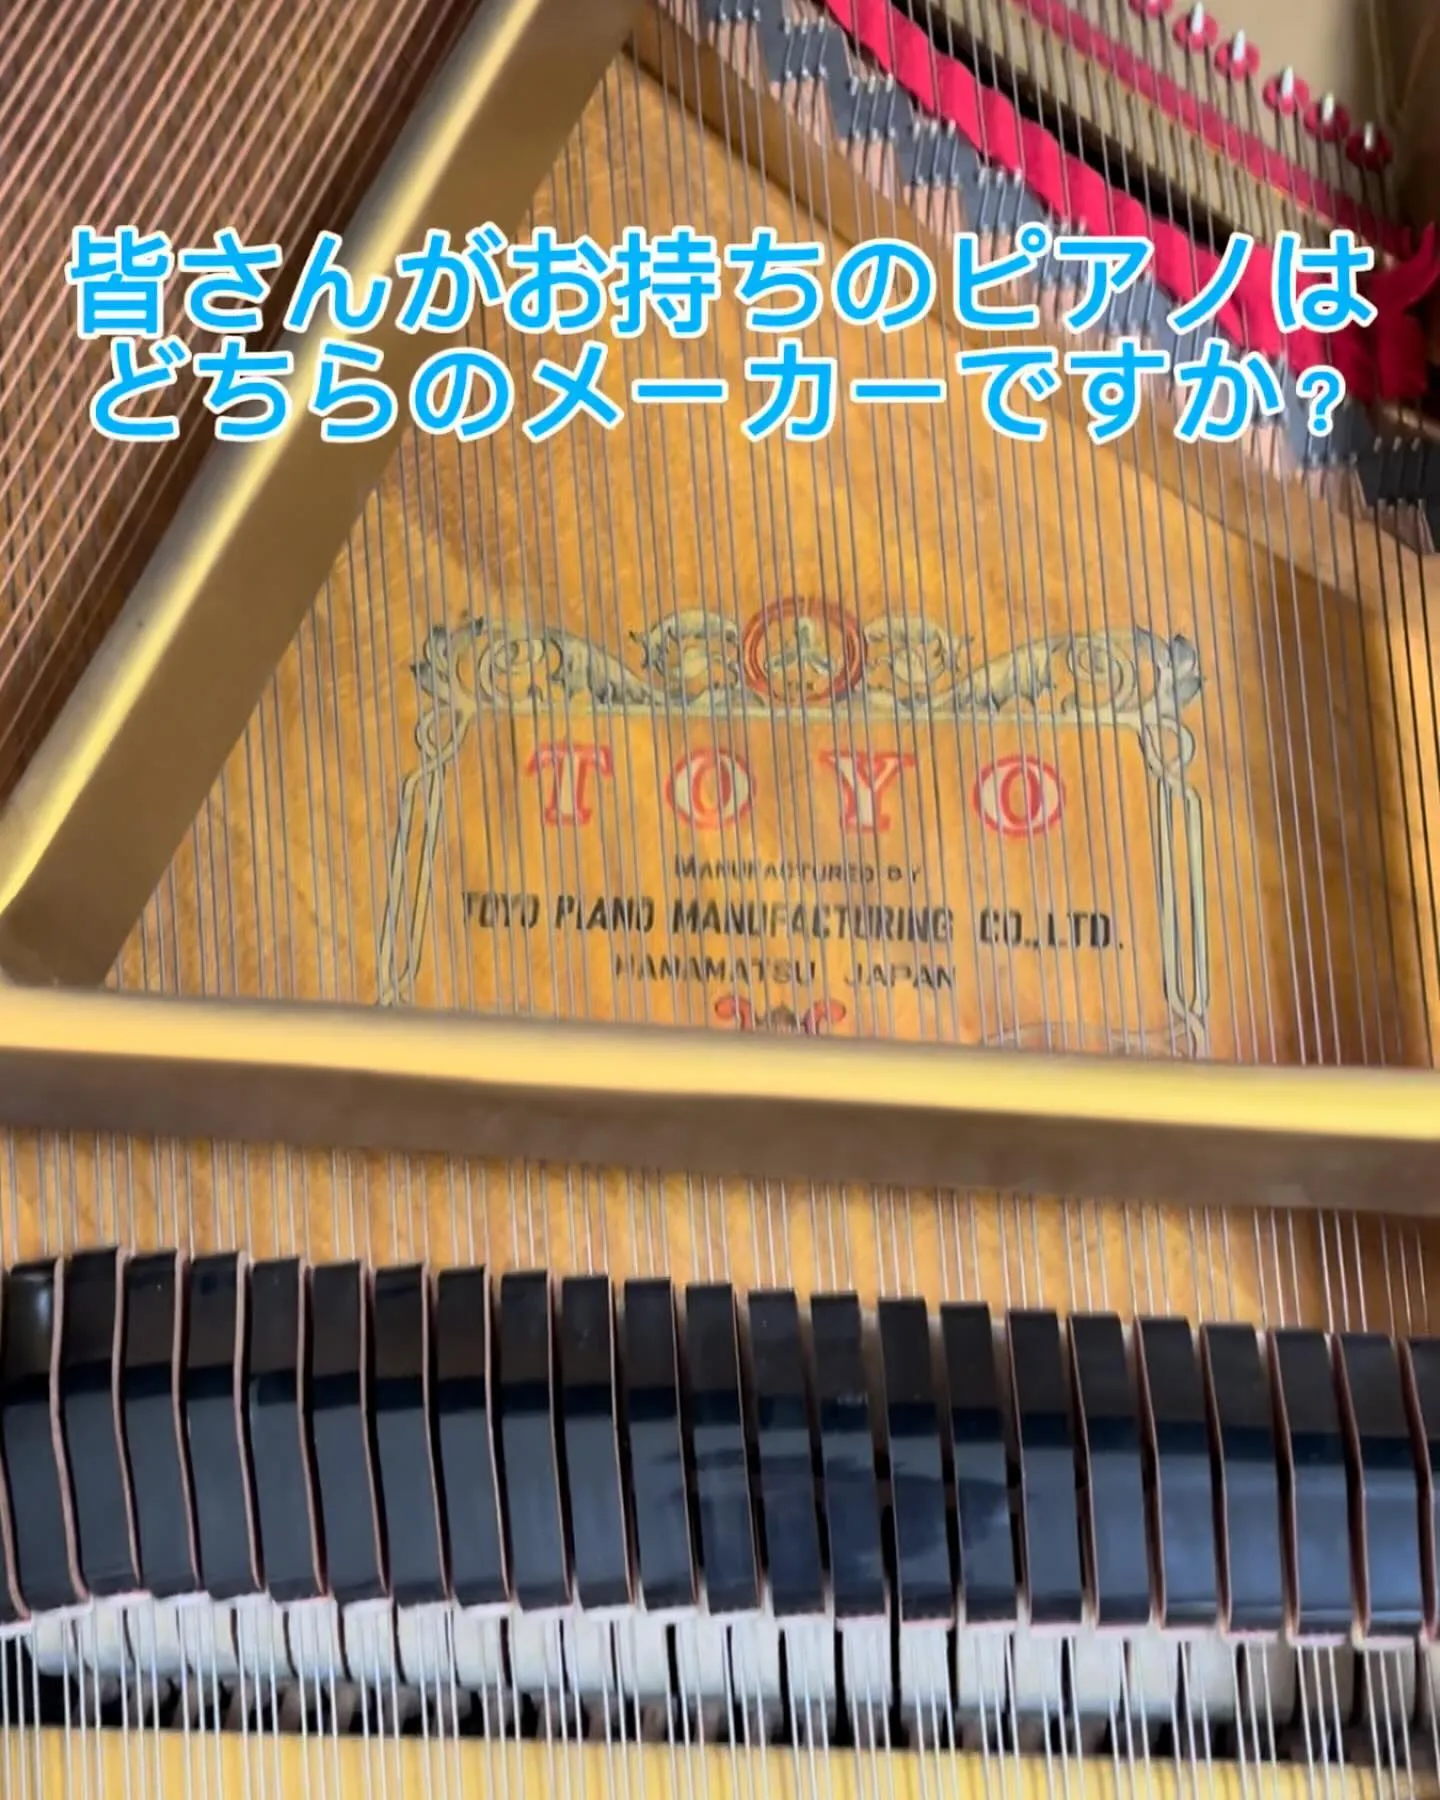 グランドピアノメーカー、機種